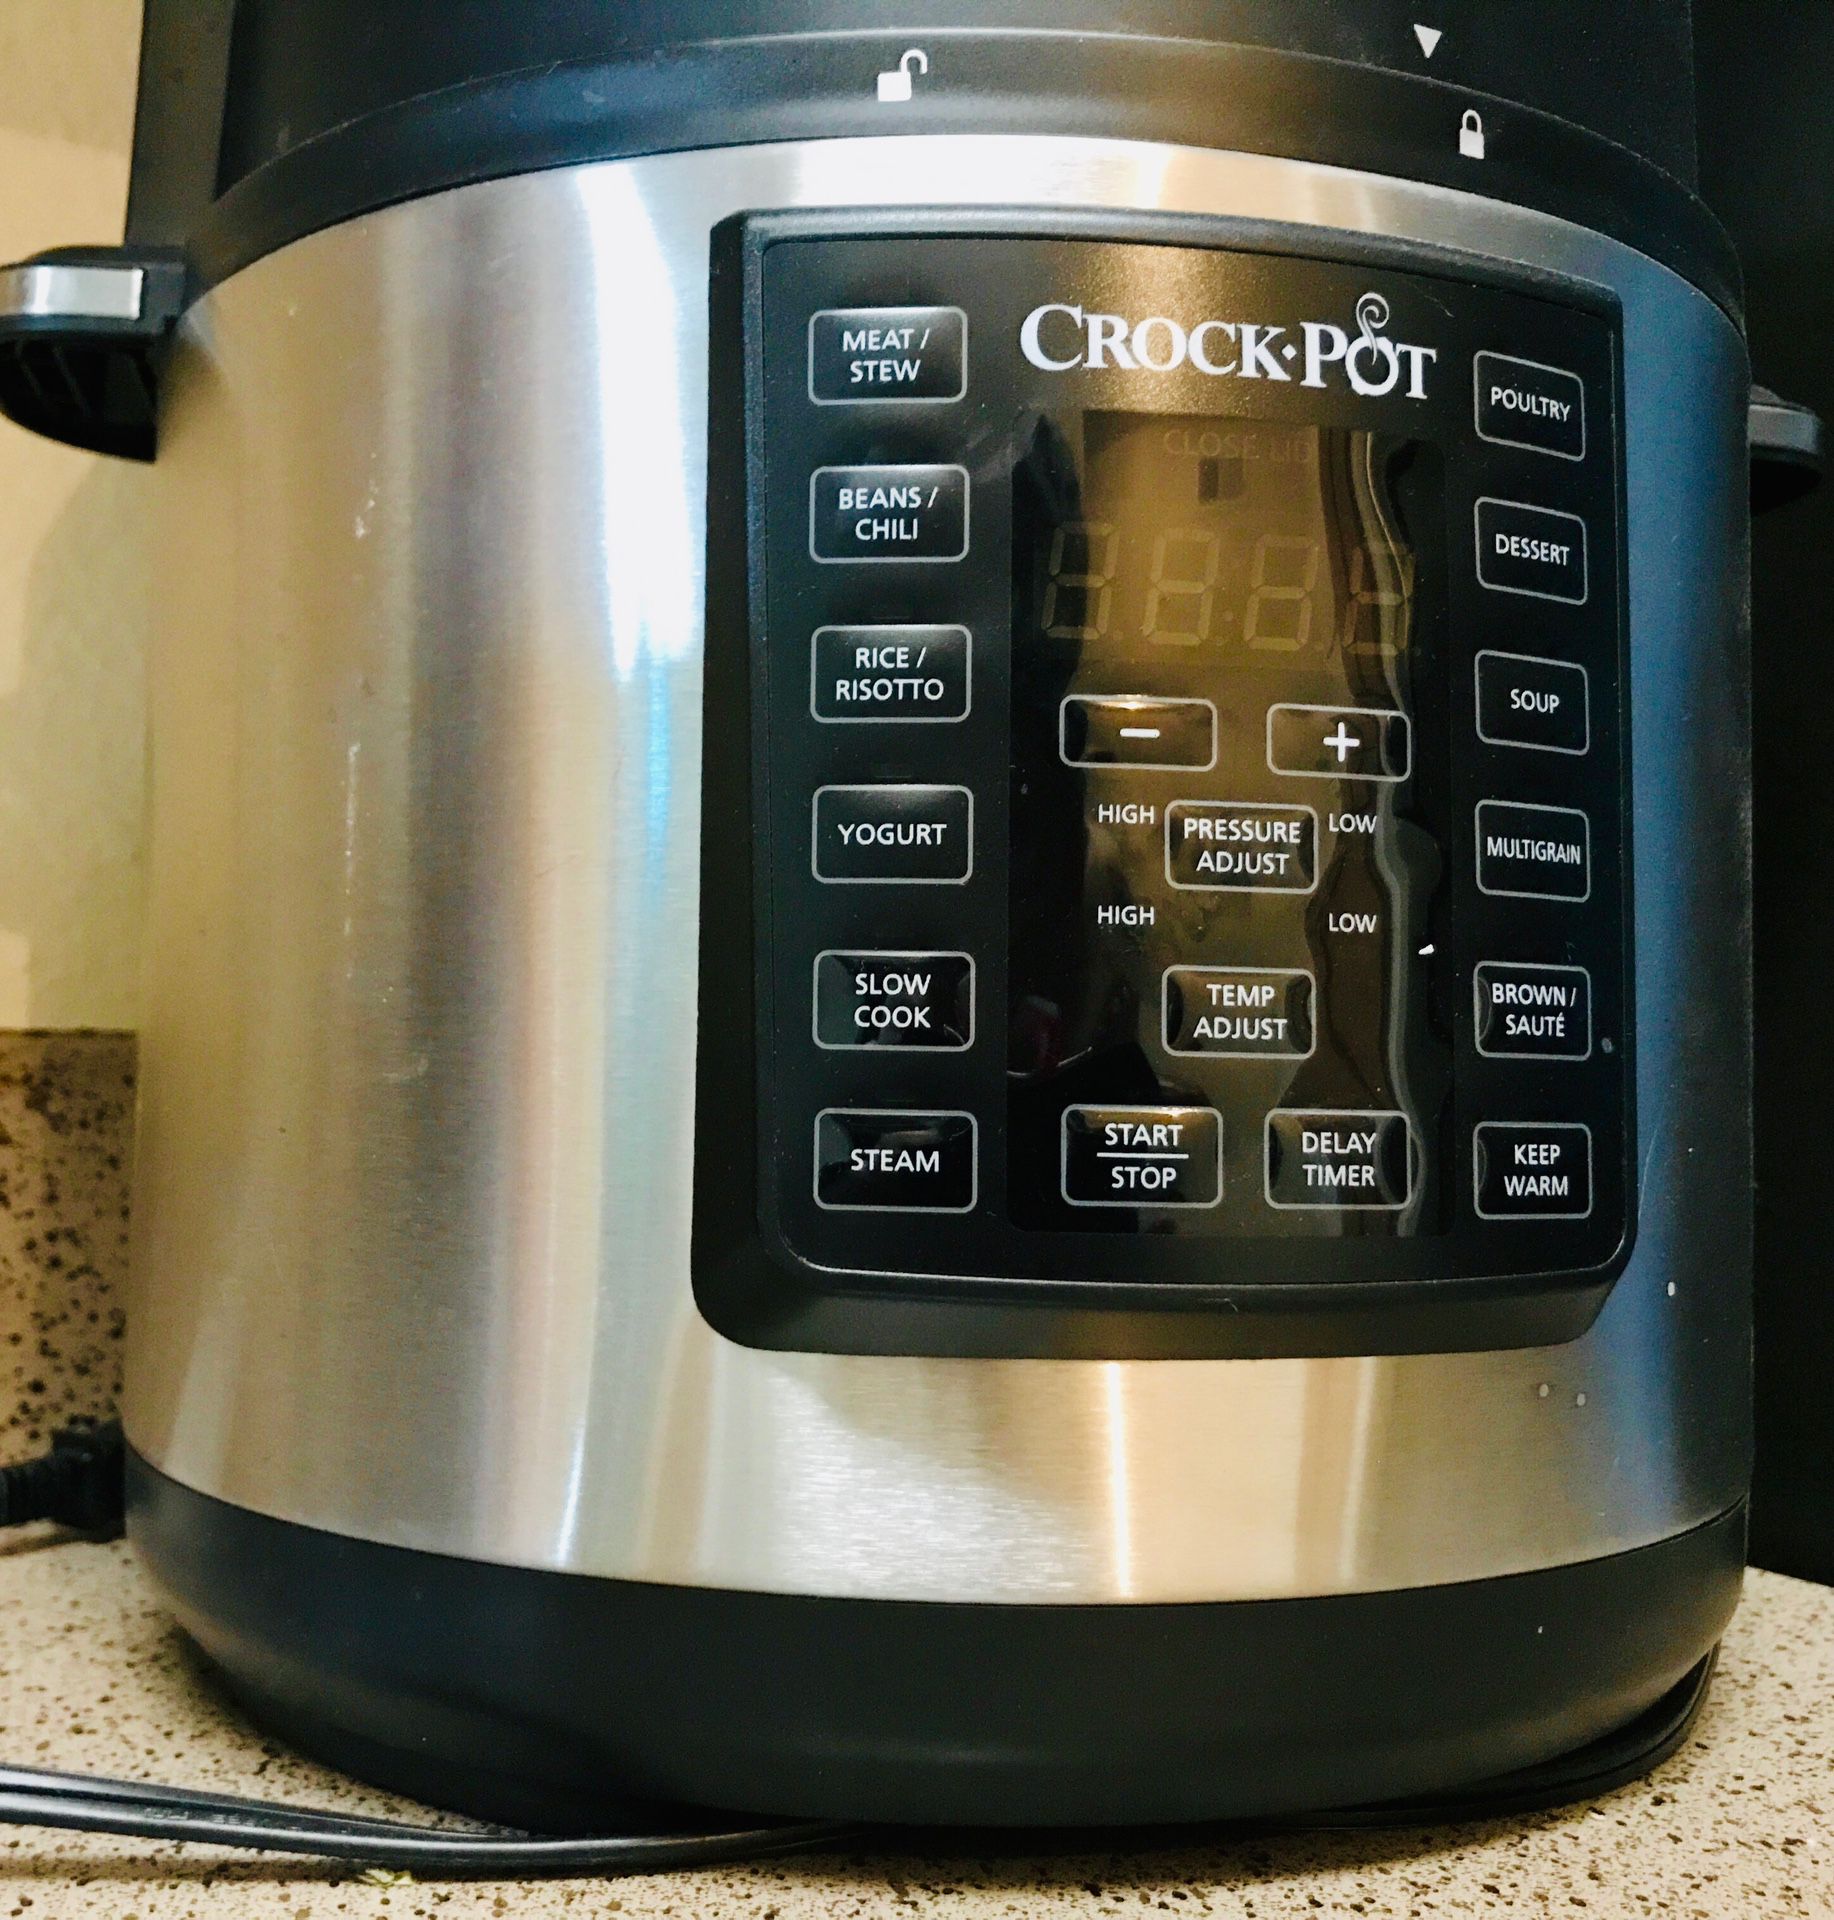 Crock pot pressure cooker